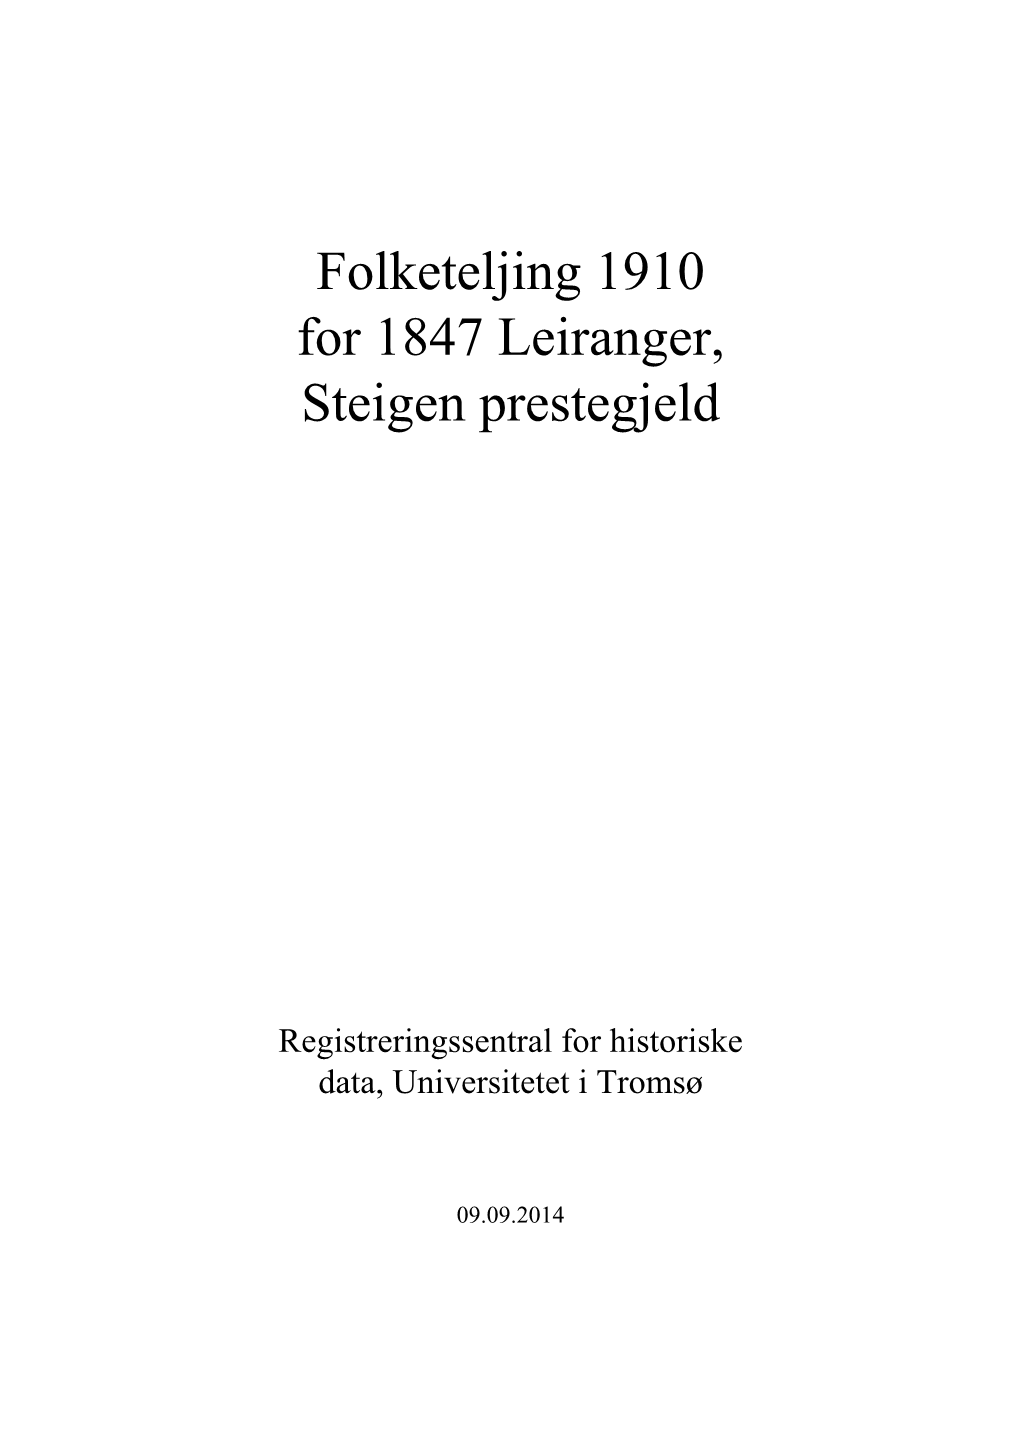 Folketeljing 1910 for 1847 Leiranger, Steigen Prestegjeld